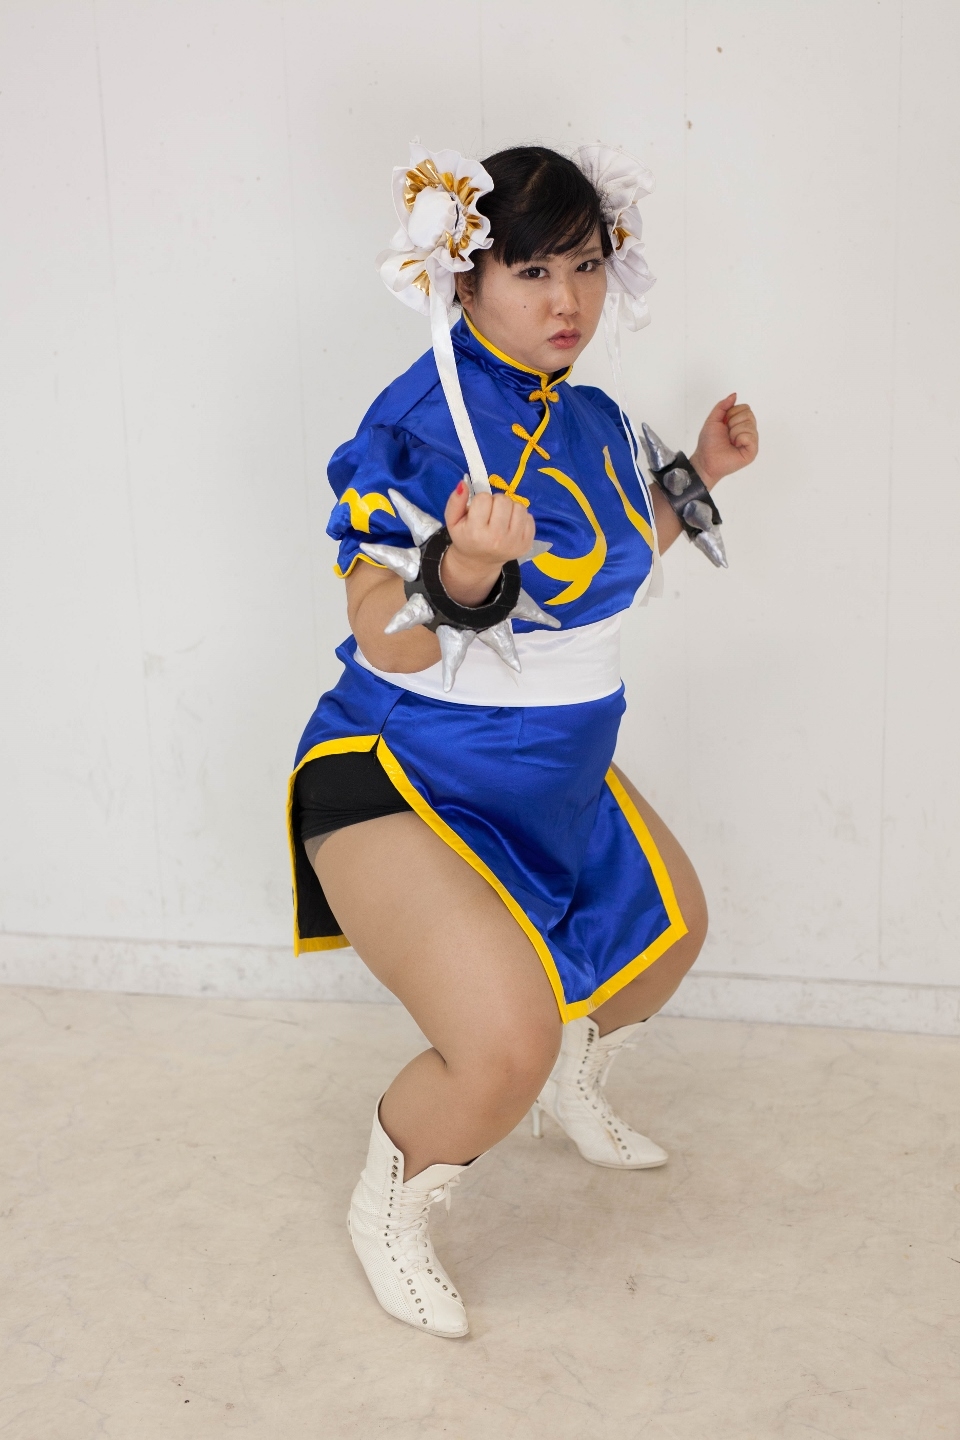 (渡辺さくらん) FIGHT FAT LADY (Sakuran Watanabe) (Mai Shiranui - Fatal Fury) (Chun-Li - Street Fighter) 97